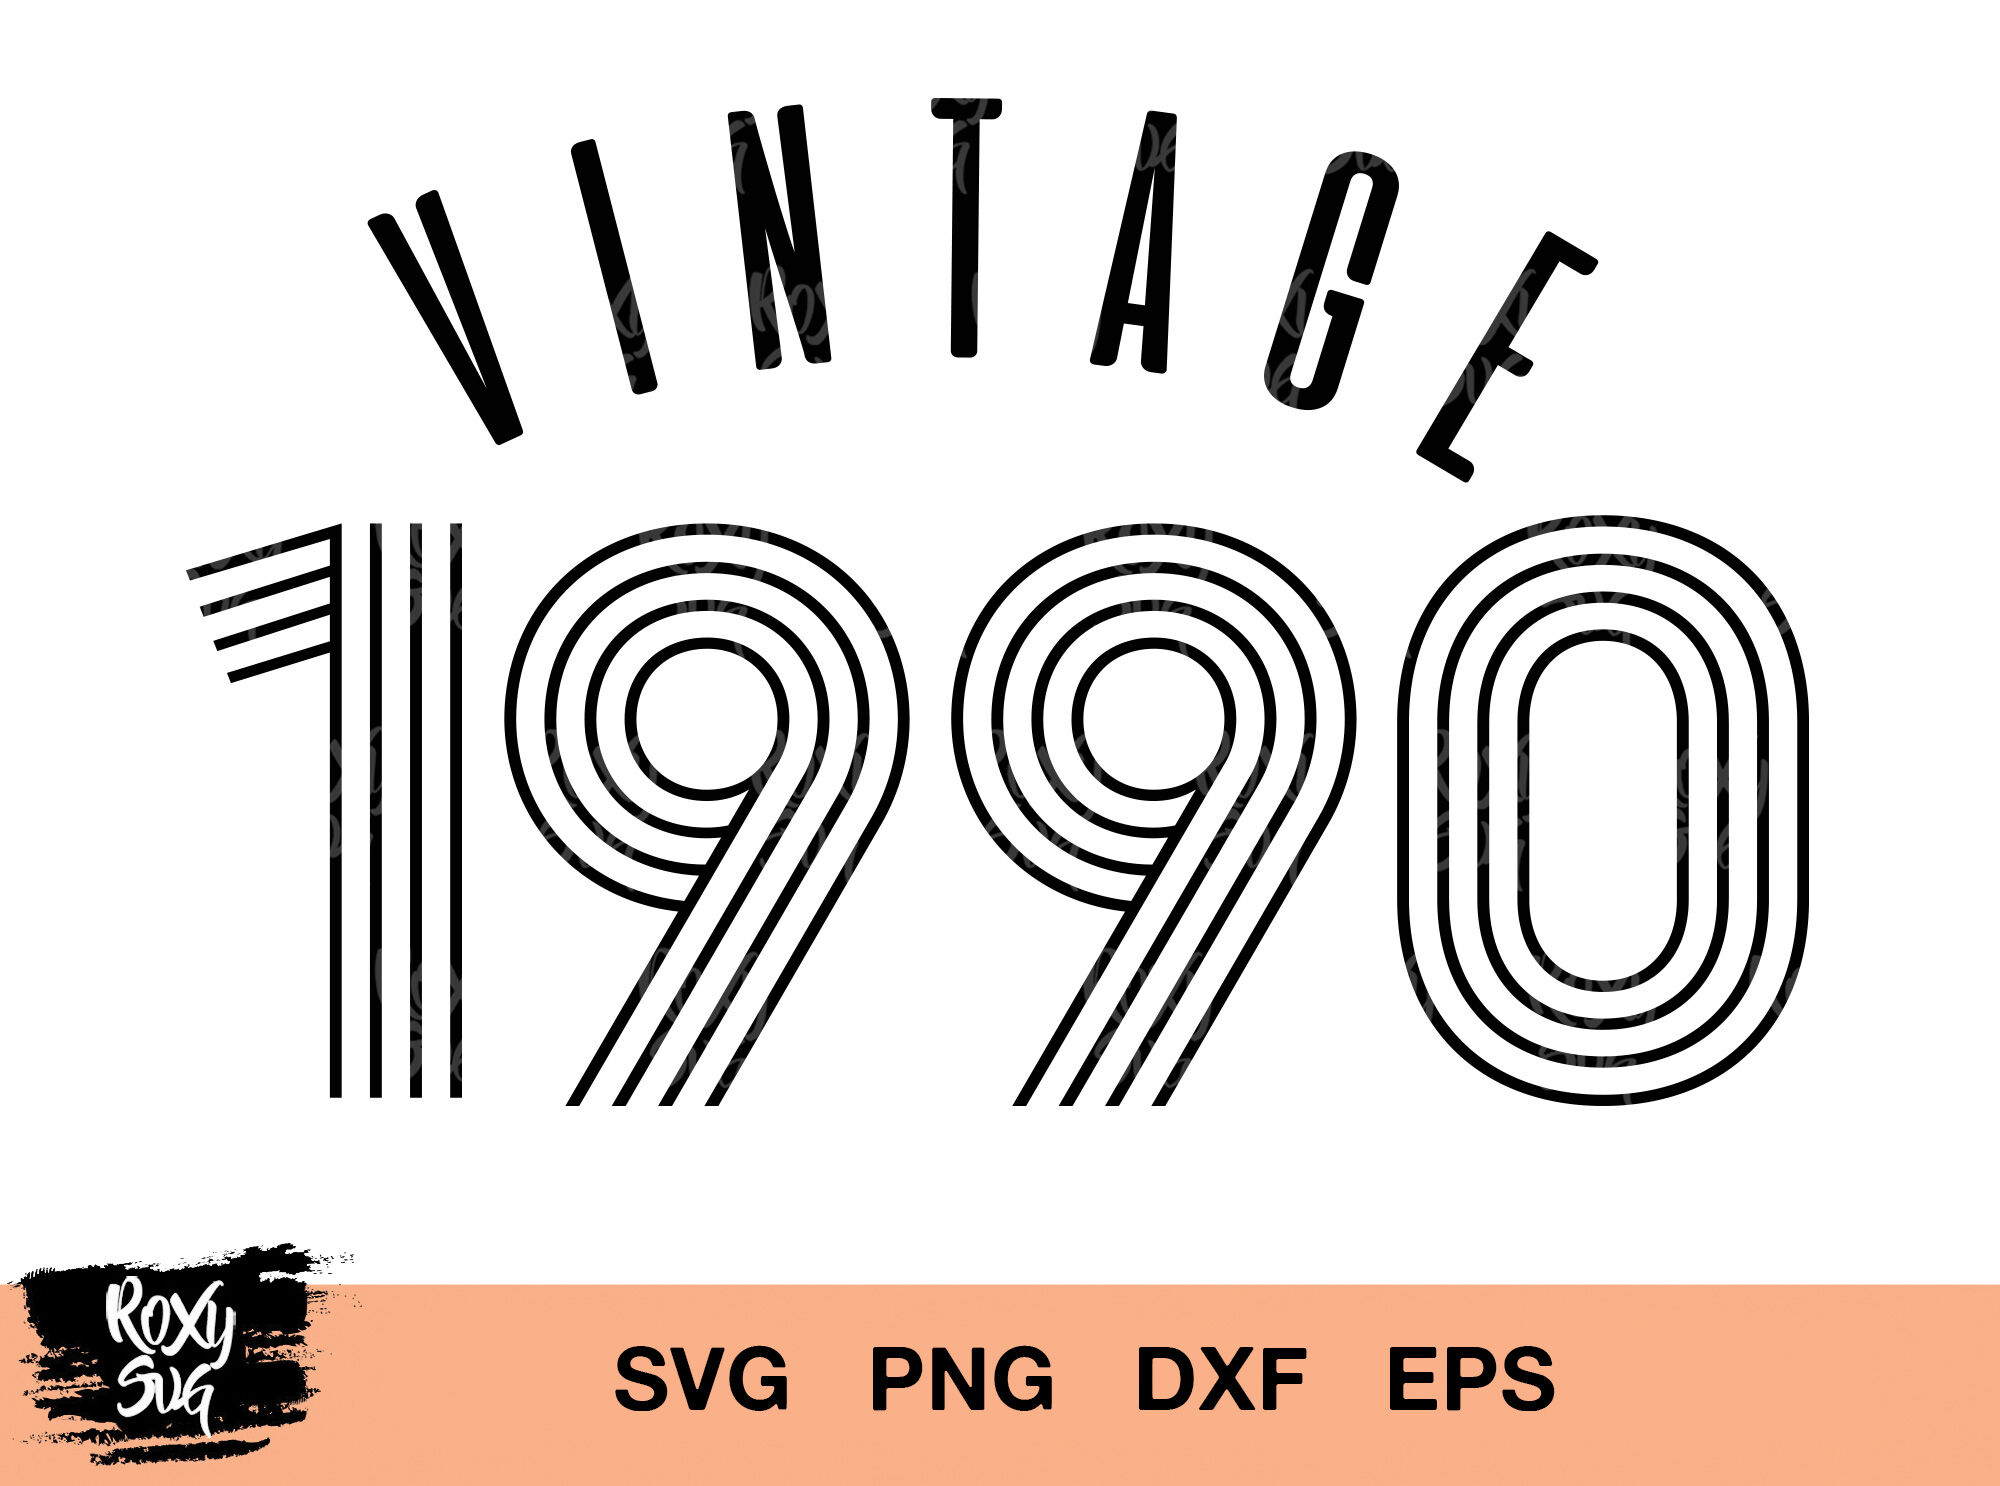 Download Vintage 1990 svg, vintage birthday svg, vintage svg, 30th ...